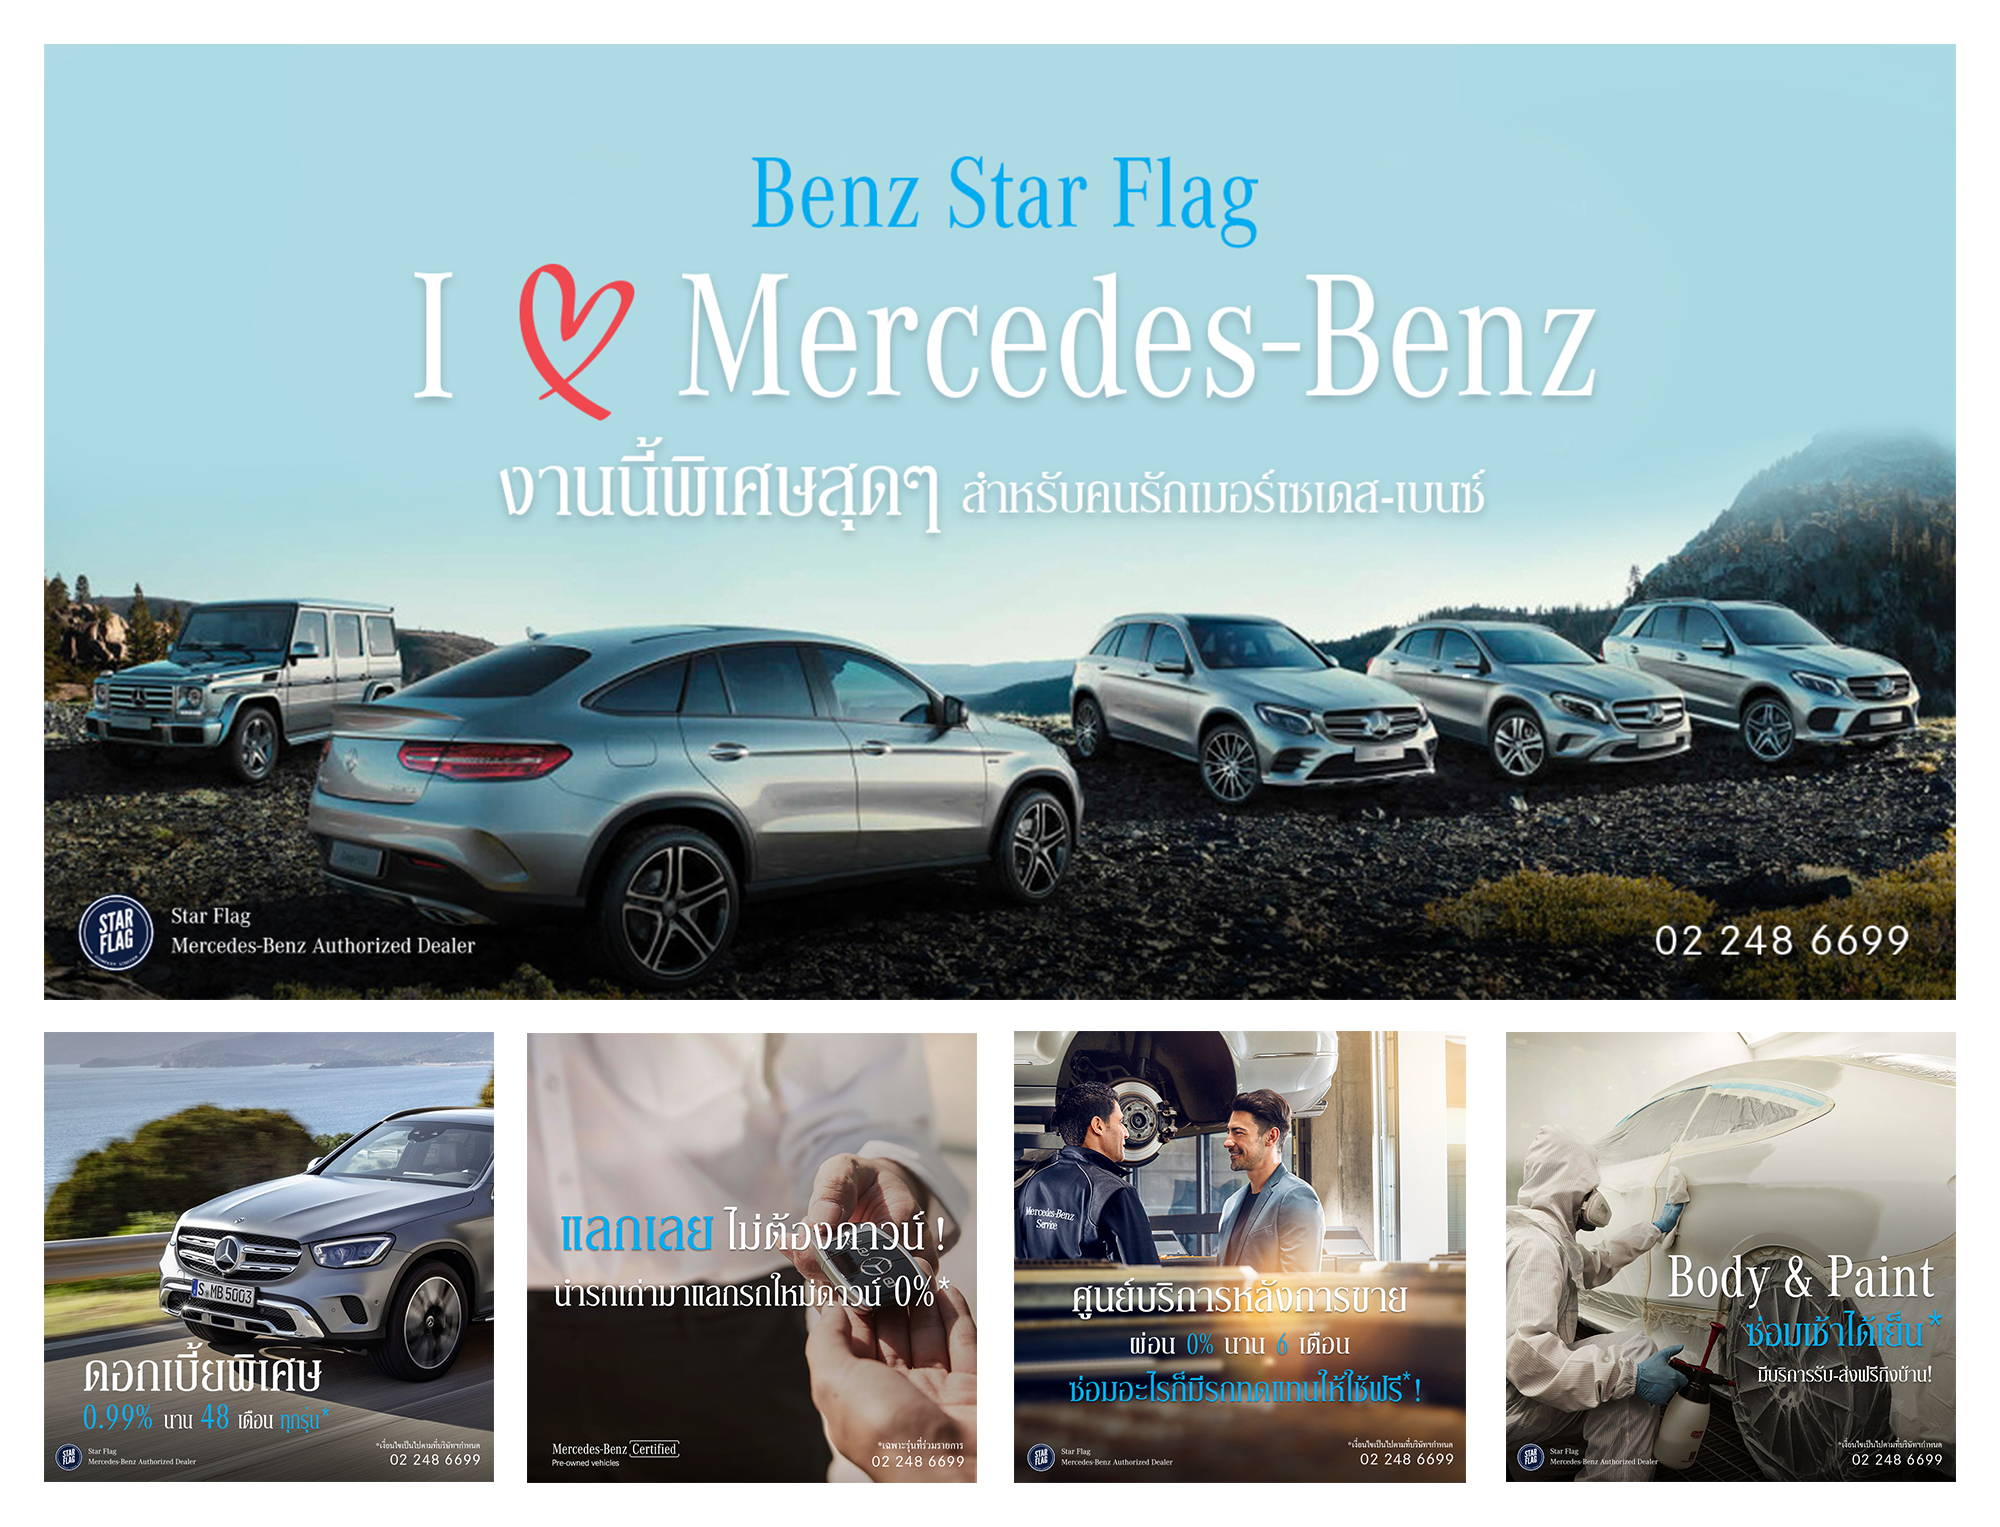 เบนซ์ สตาร์แฟลก เปิดตัว I Love Mercedes-Benz งานนี้พิเศษสุดๆ แคมเปญที่รวมครบจบ เพื่อคนรักเมอร์เซเดส-เบนซ์ วันนี้-31 สิงหาคม 2563 นี้เท่านั้น